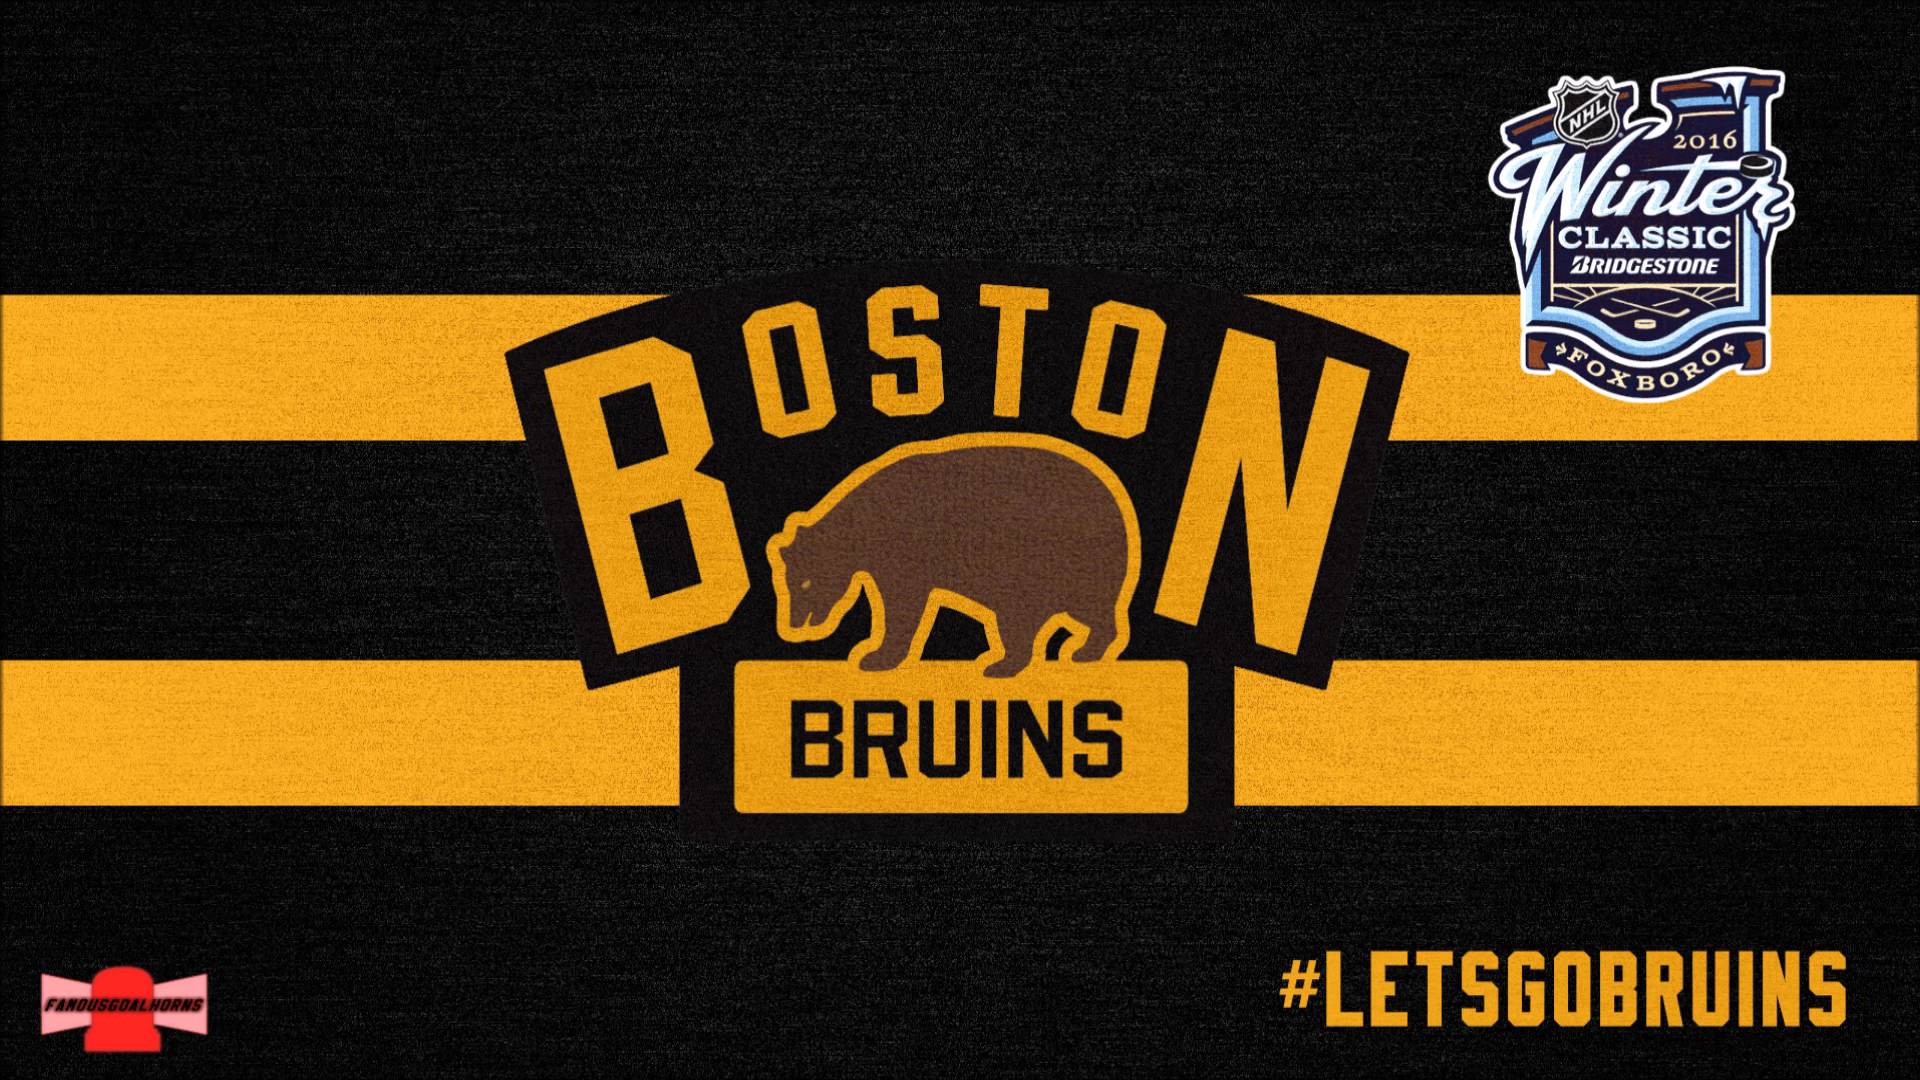 Winter Classic Boston Bruins Goal Horn